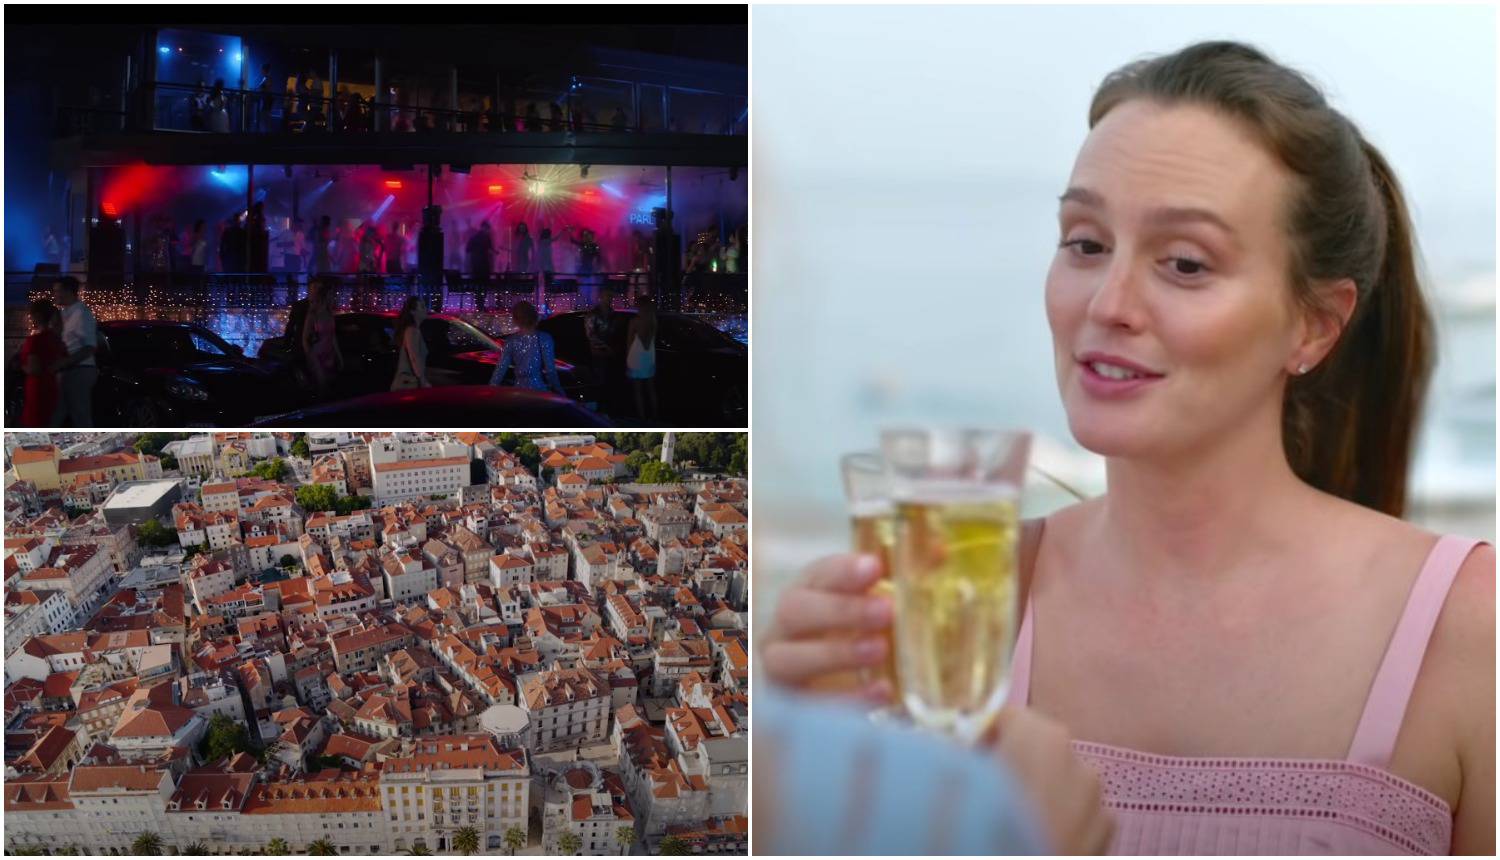 Netflixov film sniman u Splitu pun je grešaka: 'Oscar glumici koja je uronila kod Matejuške'